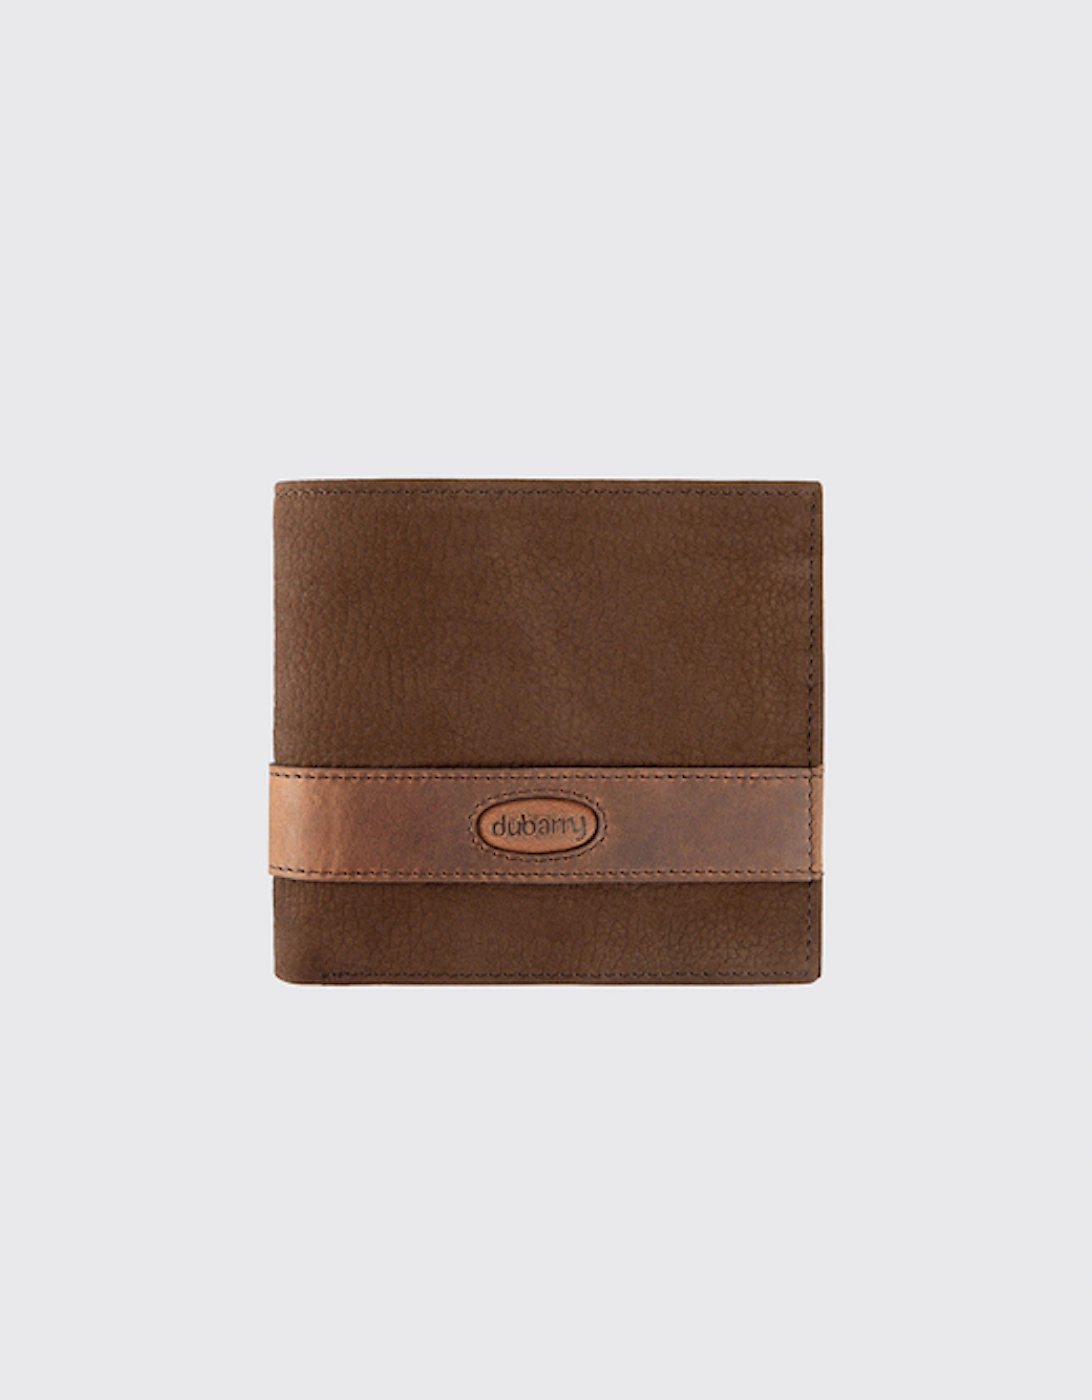 Grafton Leather Wallet Walnut, 2 of 1